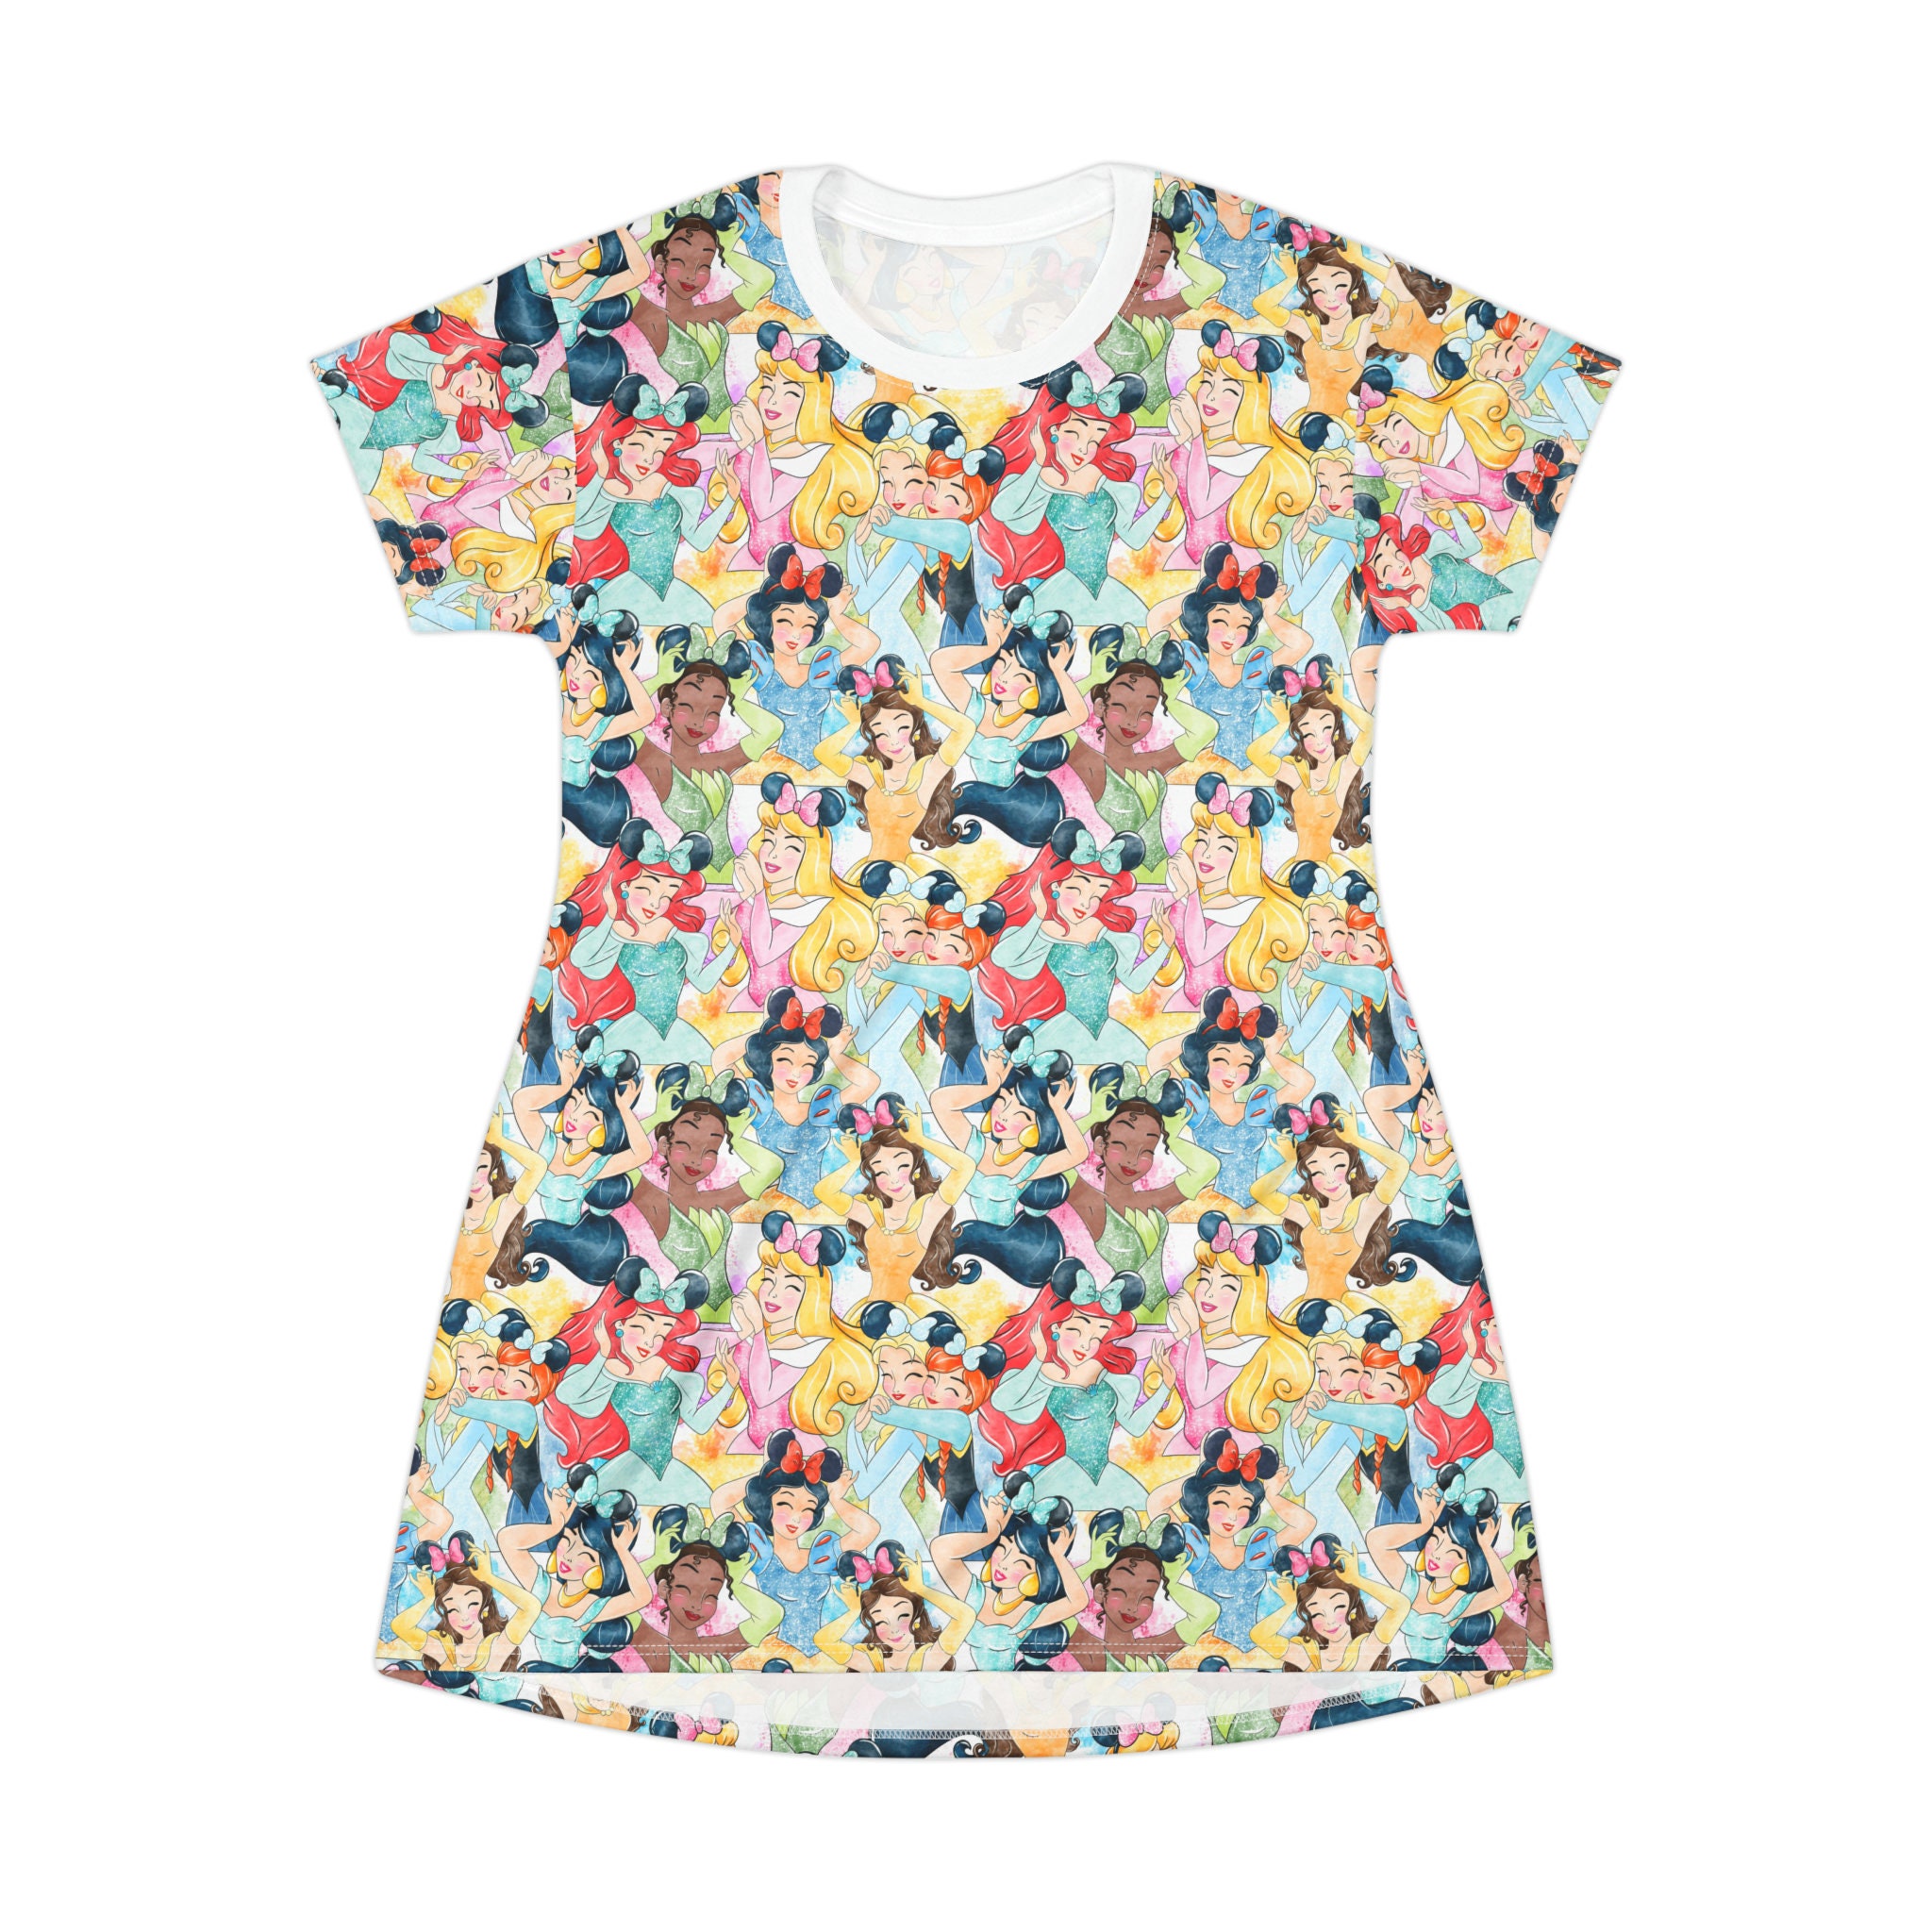 Disney Princess Disney T-Shirt Dress, Cartoon Women's T-Shirt Dress